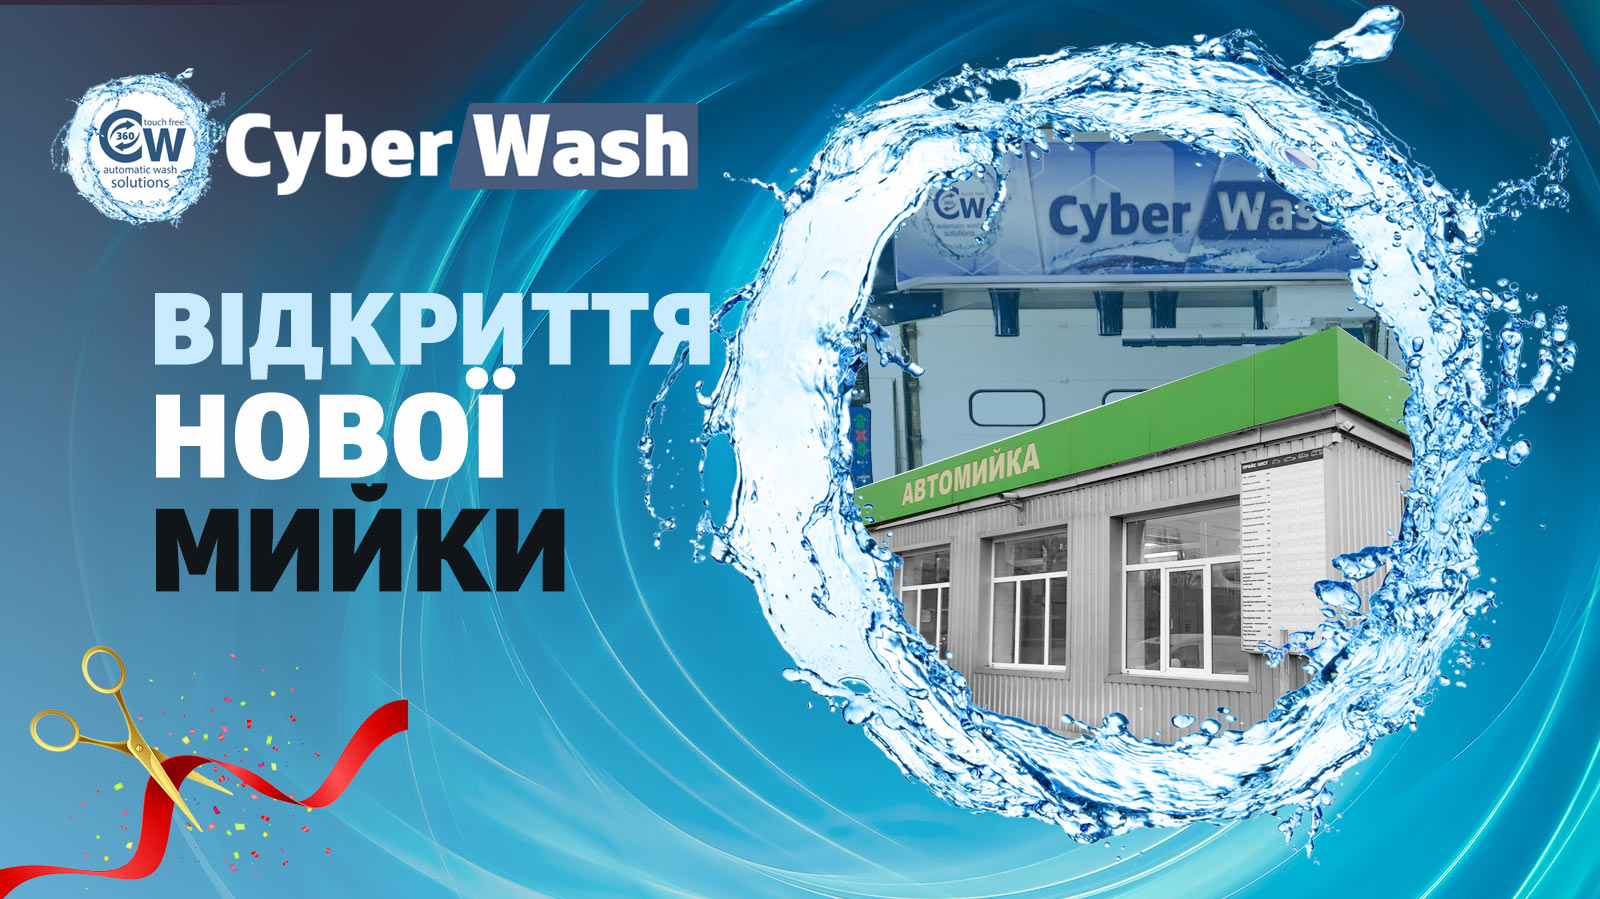 Нова роботизована мийка CyberWash 360 Plus у м.Київ